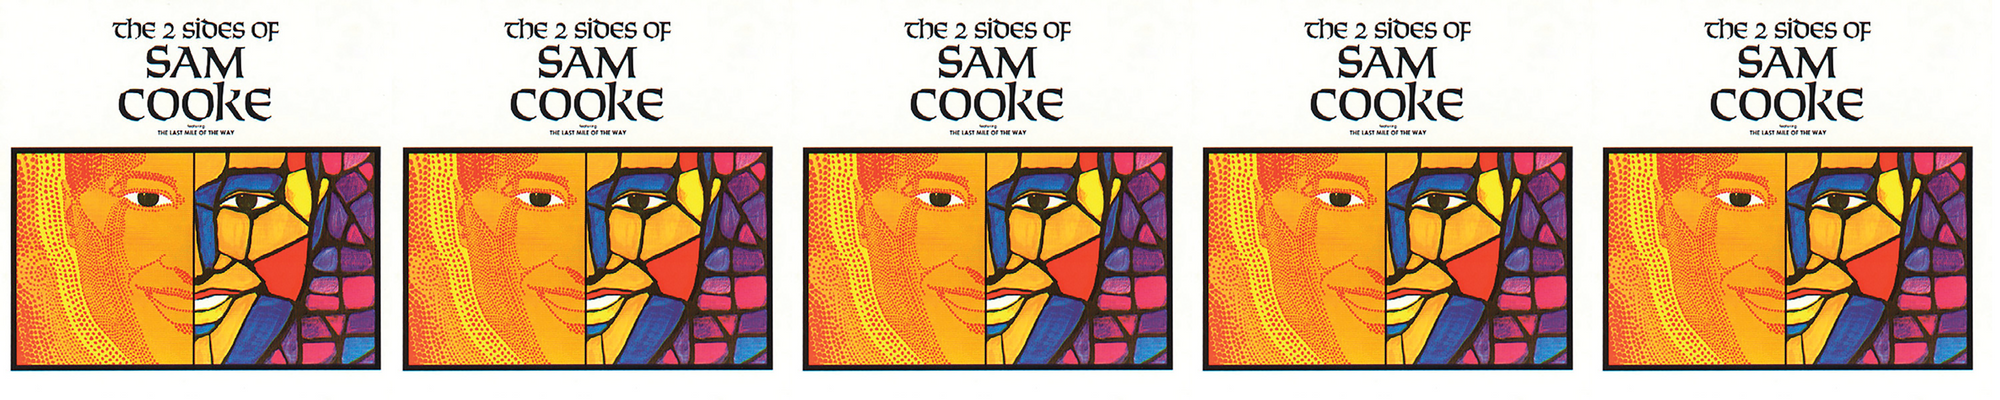 Sam Cooke - The 2 Sides of Sam Cooke